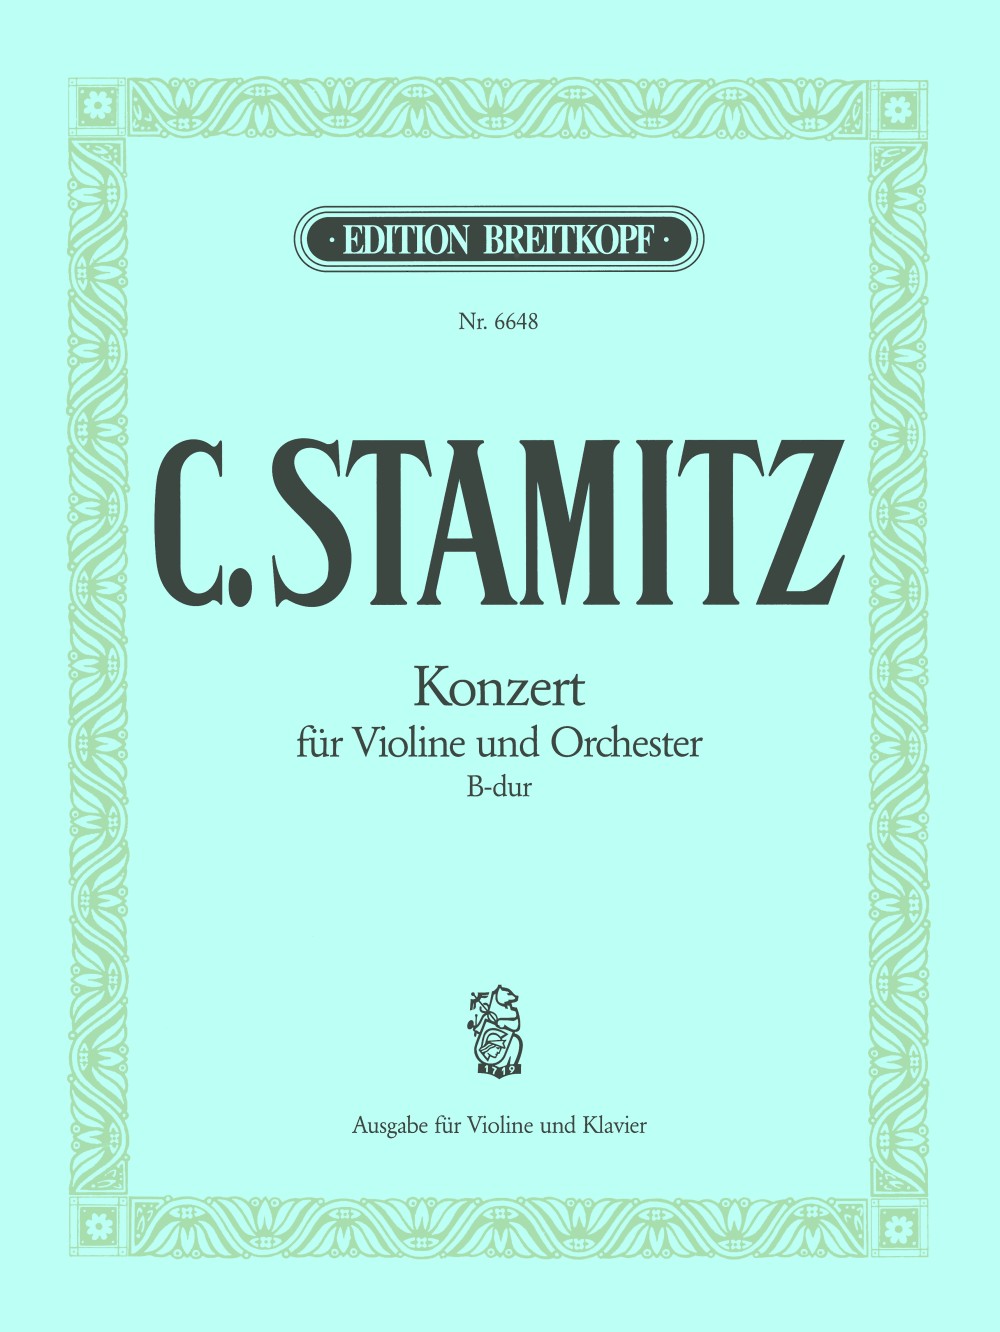 Stamitz: Violin Concerto in B-flat Major